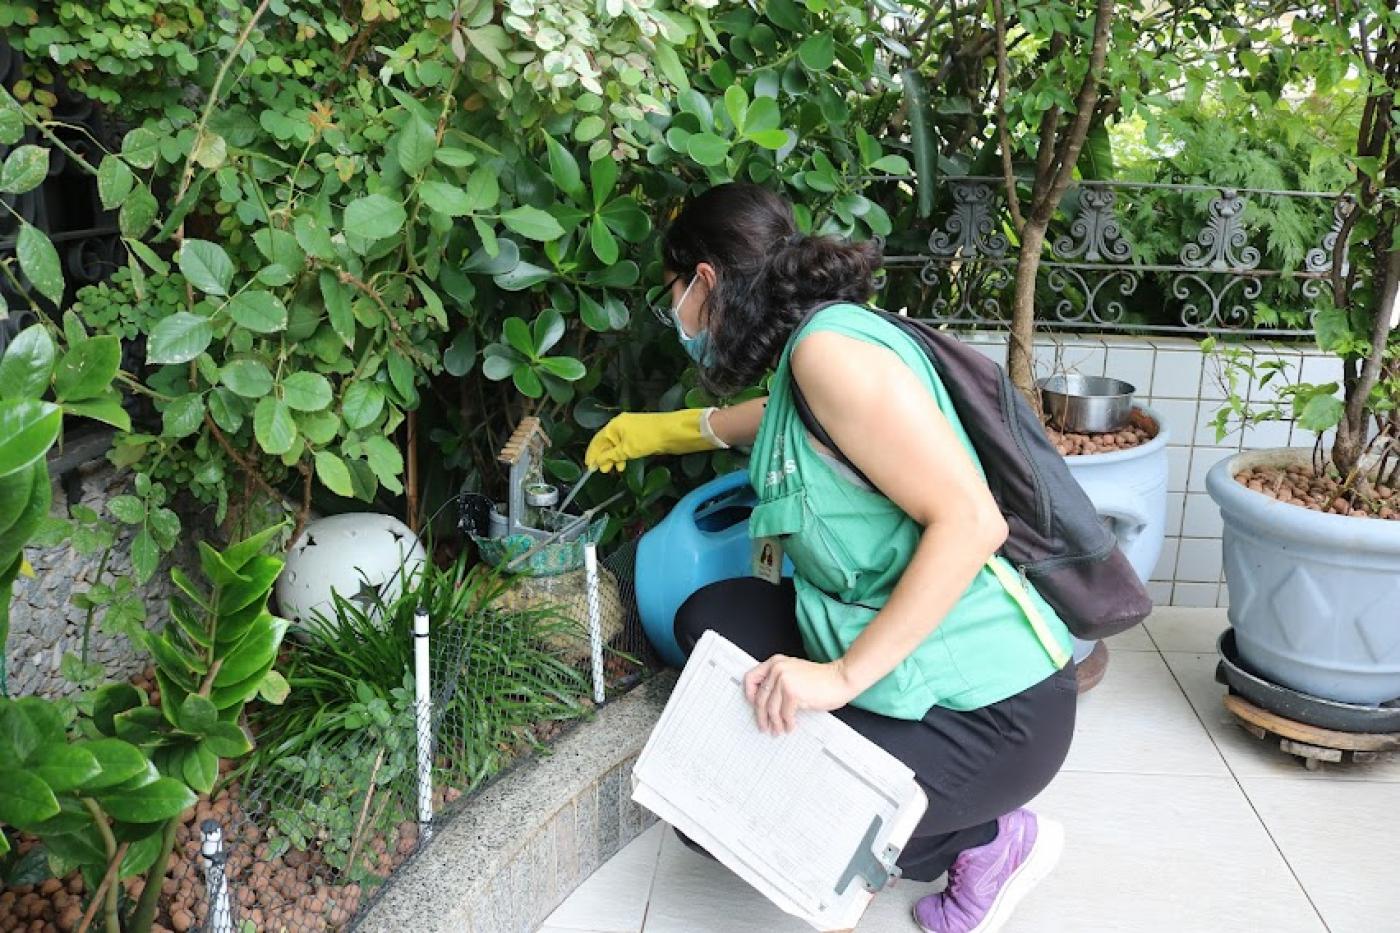 agente está agachada junto a um jardim mexendo em vaso em busca de larvas de mosquito. Ela usa luva na mão que mexe no jardim. Em outra mão, uma prancheta. #paratodosverem